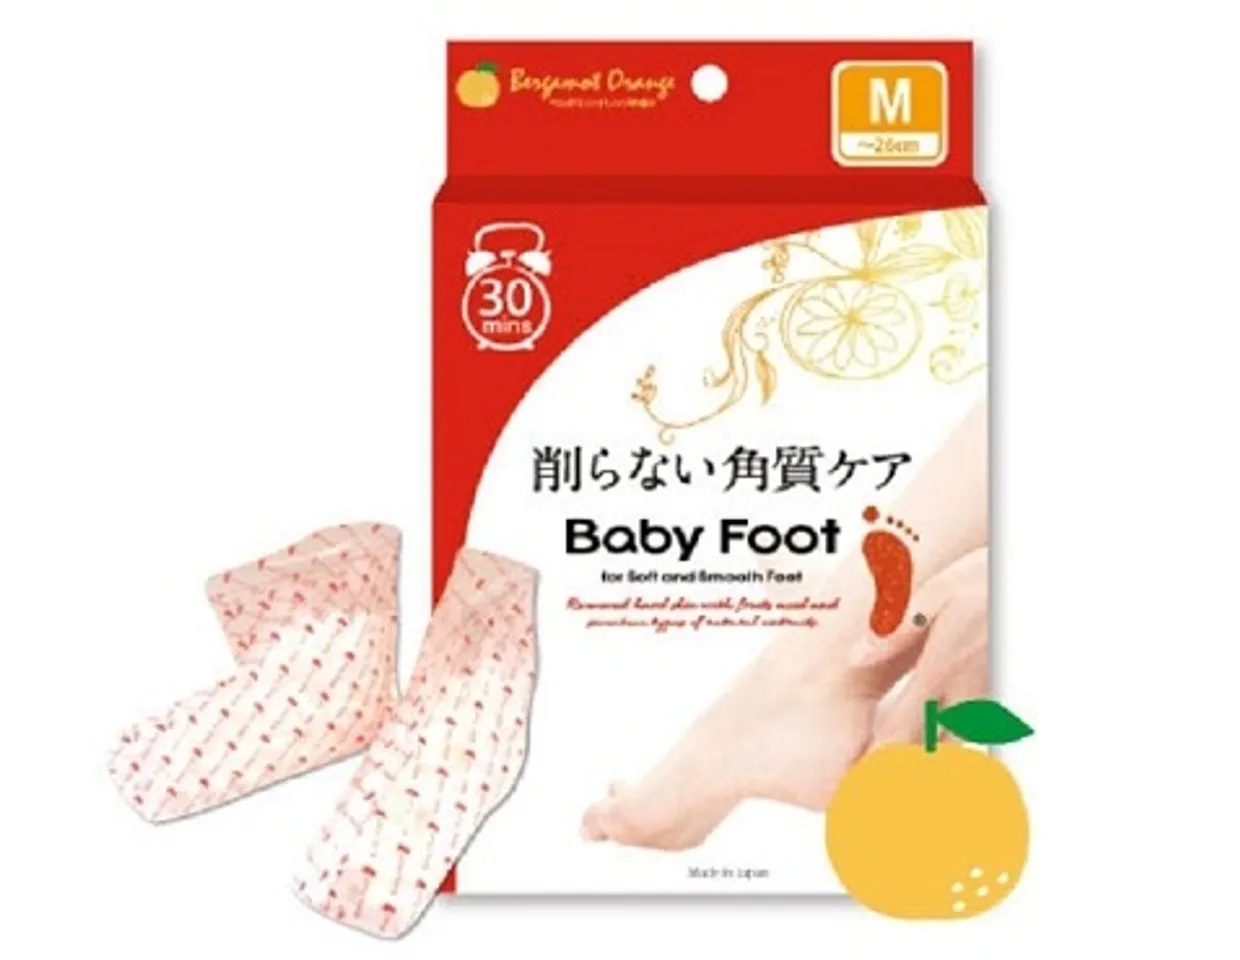 Dòng sản phẩm Baby Foot của Nhật Bản giúp bạn giải quyết triệt các vấn đề cho đôi chân, loại bỏ cả mùi hôi chân khó chịu